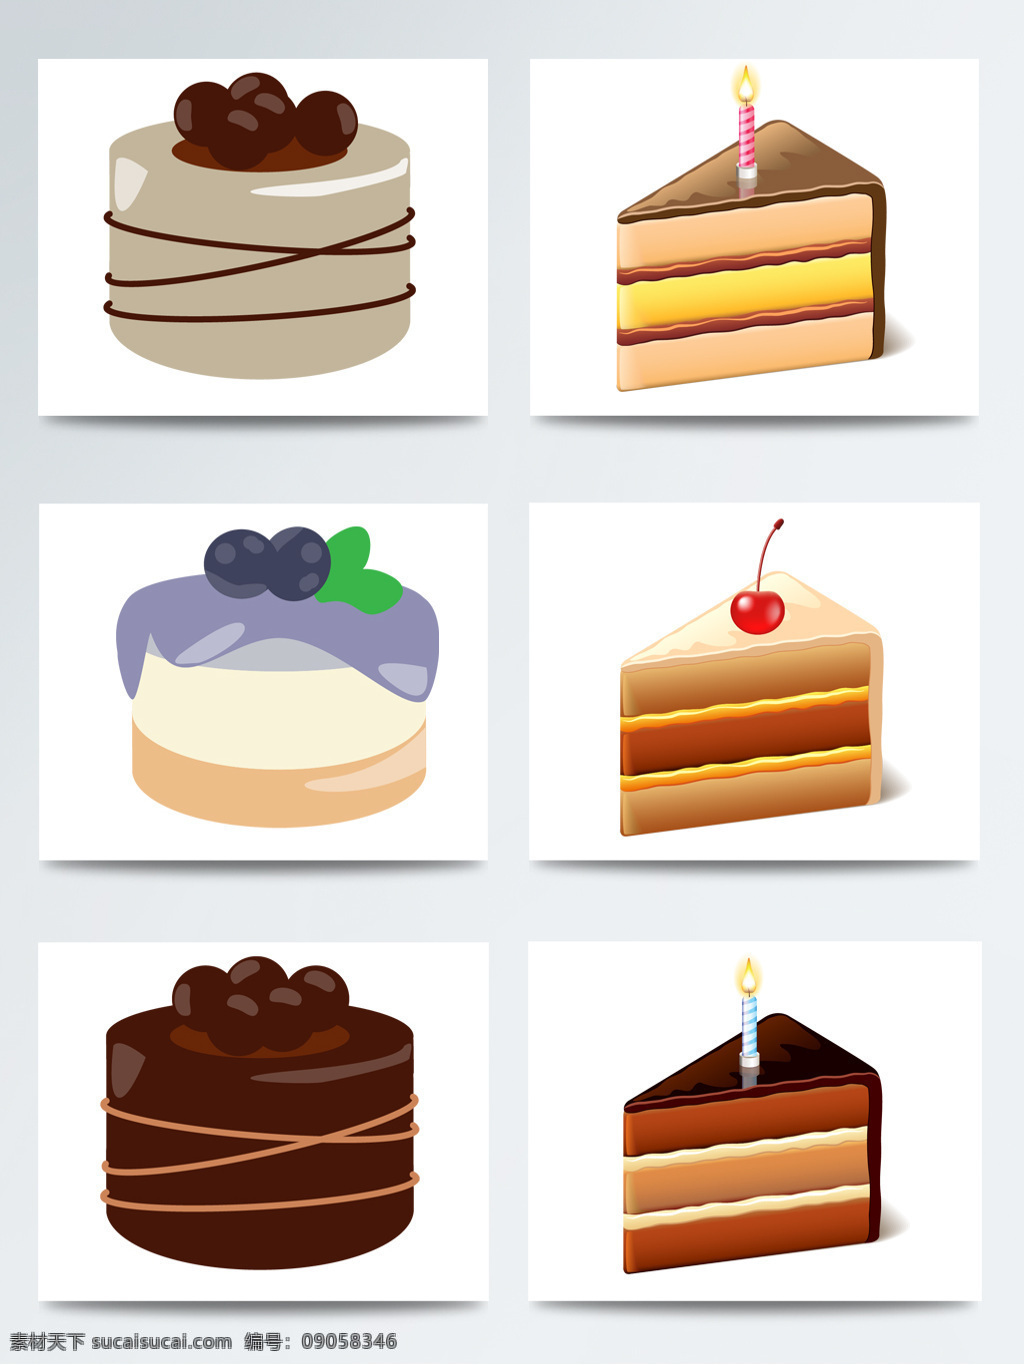 草莓 糕点 烘焙 蜡烛 蓝莓蛋糕 美食 美味蛋糕 巧克力蛋糕 生日蛋糕 食品 手绘蛋糕 手绘生日蛋糕 水果蛋糕 高清 免 扣 巧克力 芝士 蛋糕 甜品 芝士蛋糕